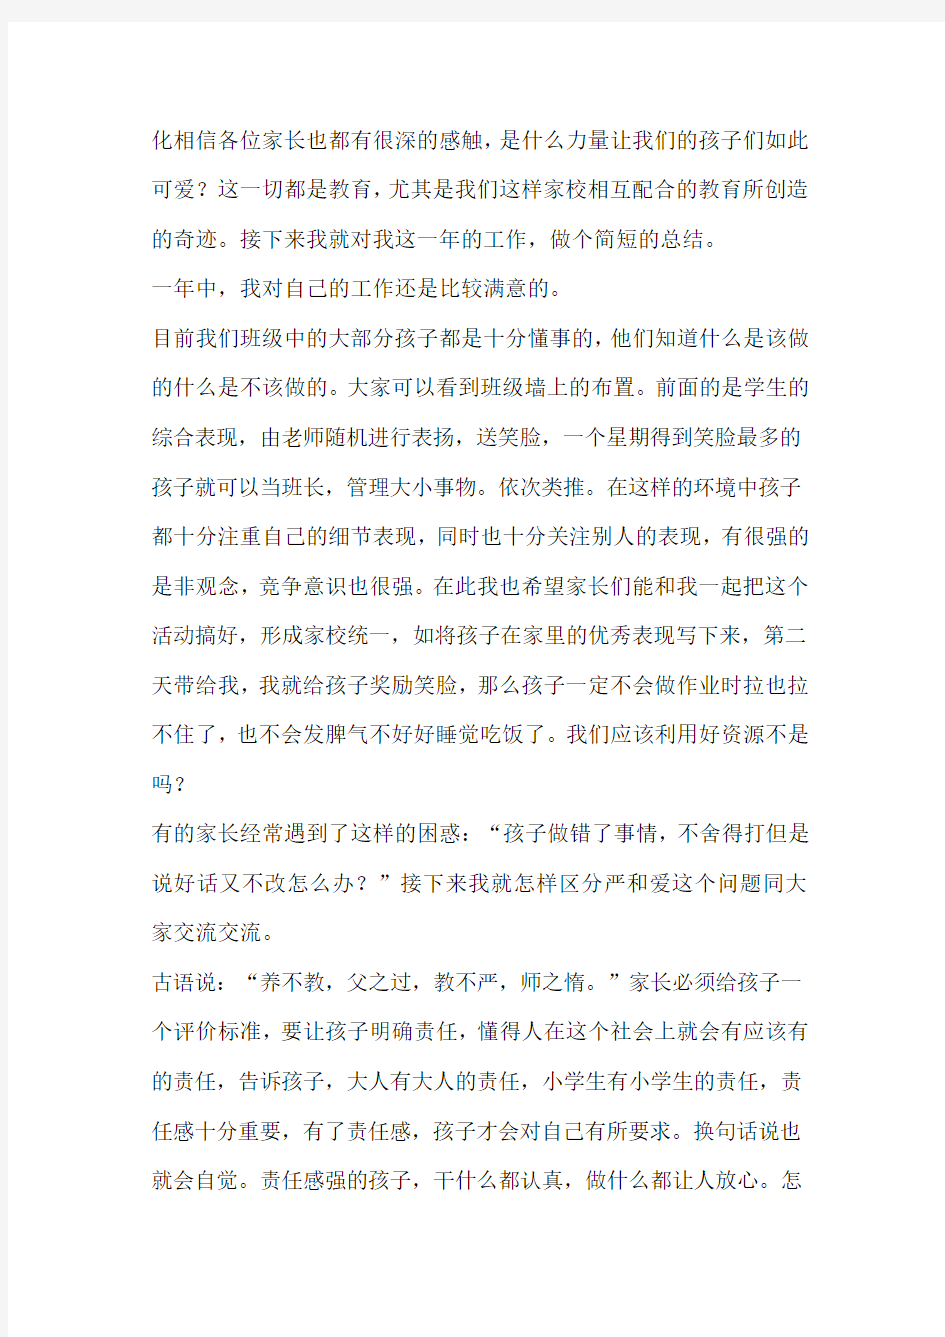 【2019年整理】台湾台北市仁爱路四段中山公园内国父纪念馆的导游词